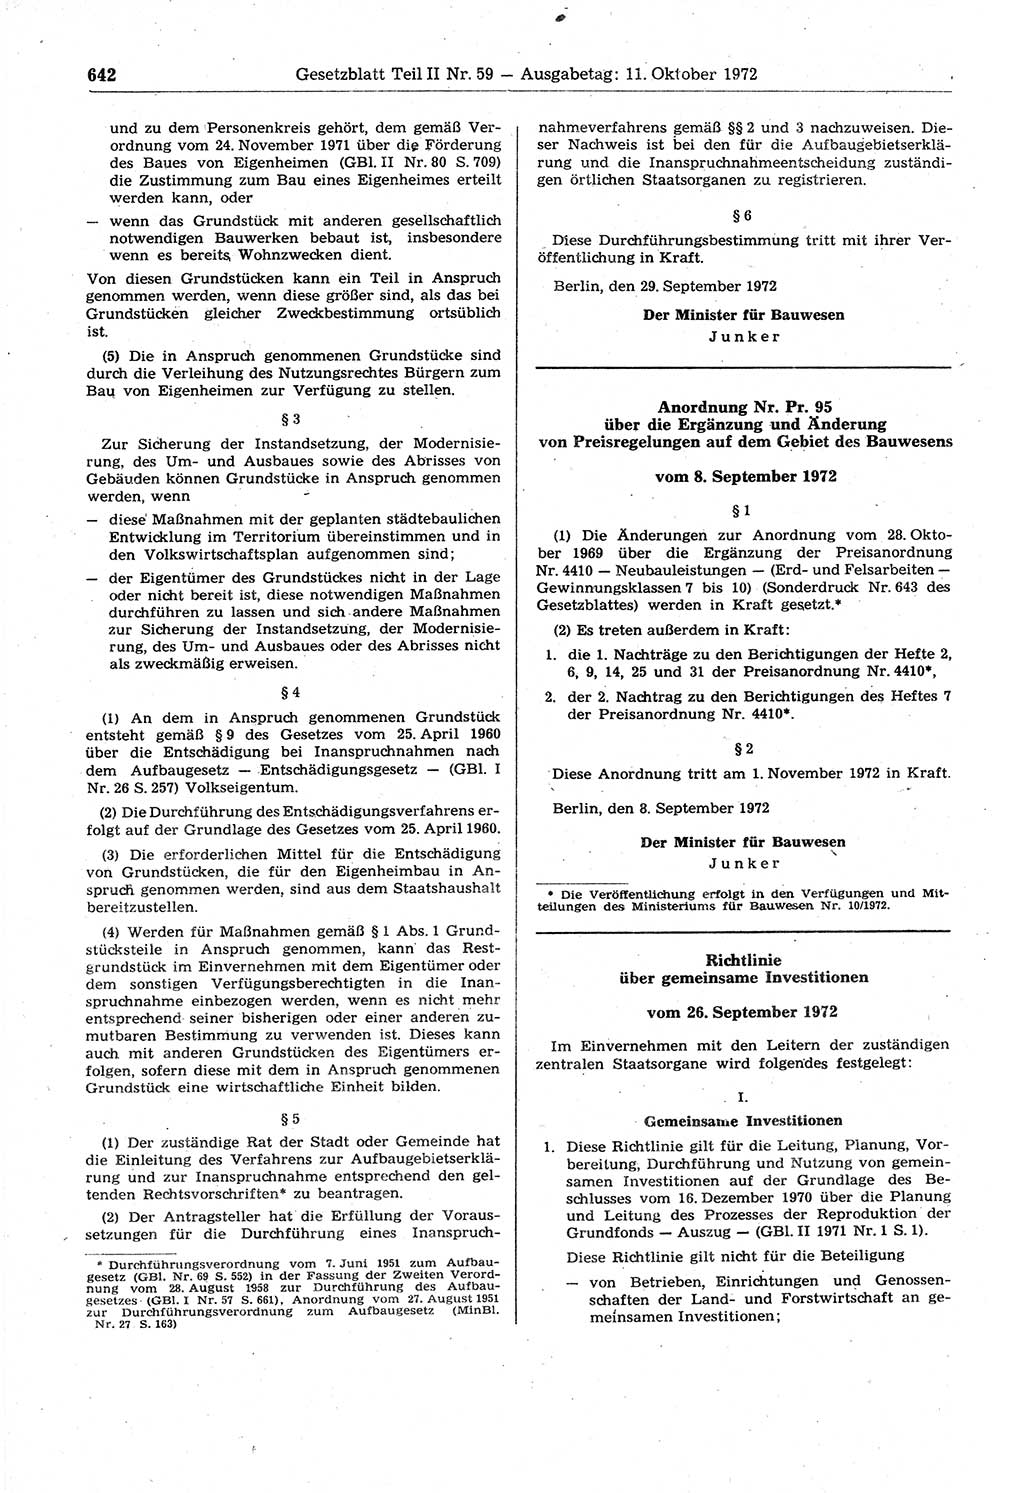 Gesetzblatt (GBl.) der Deutschen Demokratischen Republik (DDR) Teil ⅠⅠ 1972, Seite 642 (GBl. DDR ⅠⅠ 1972, S. 642)